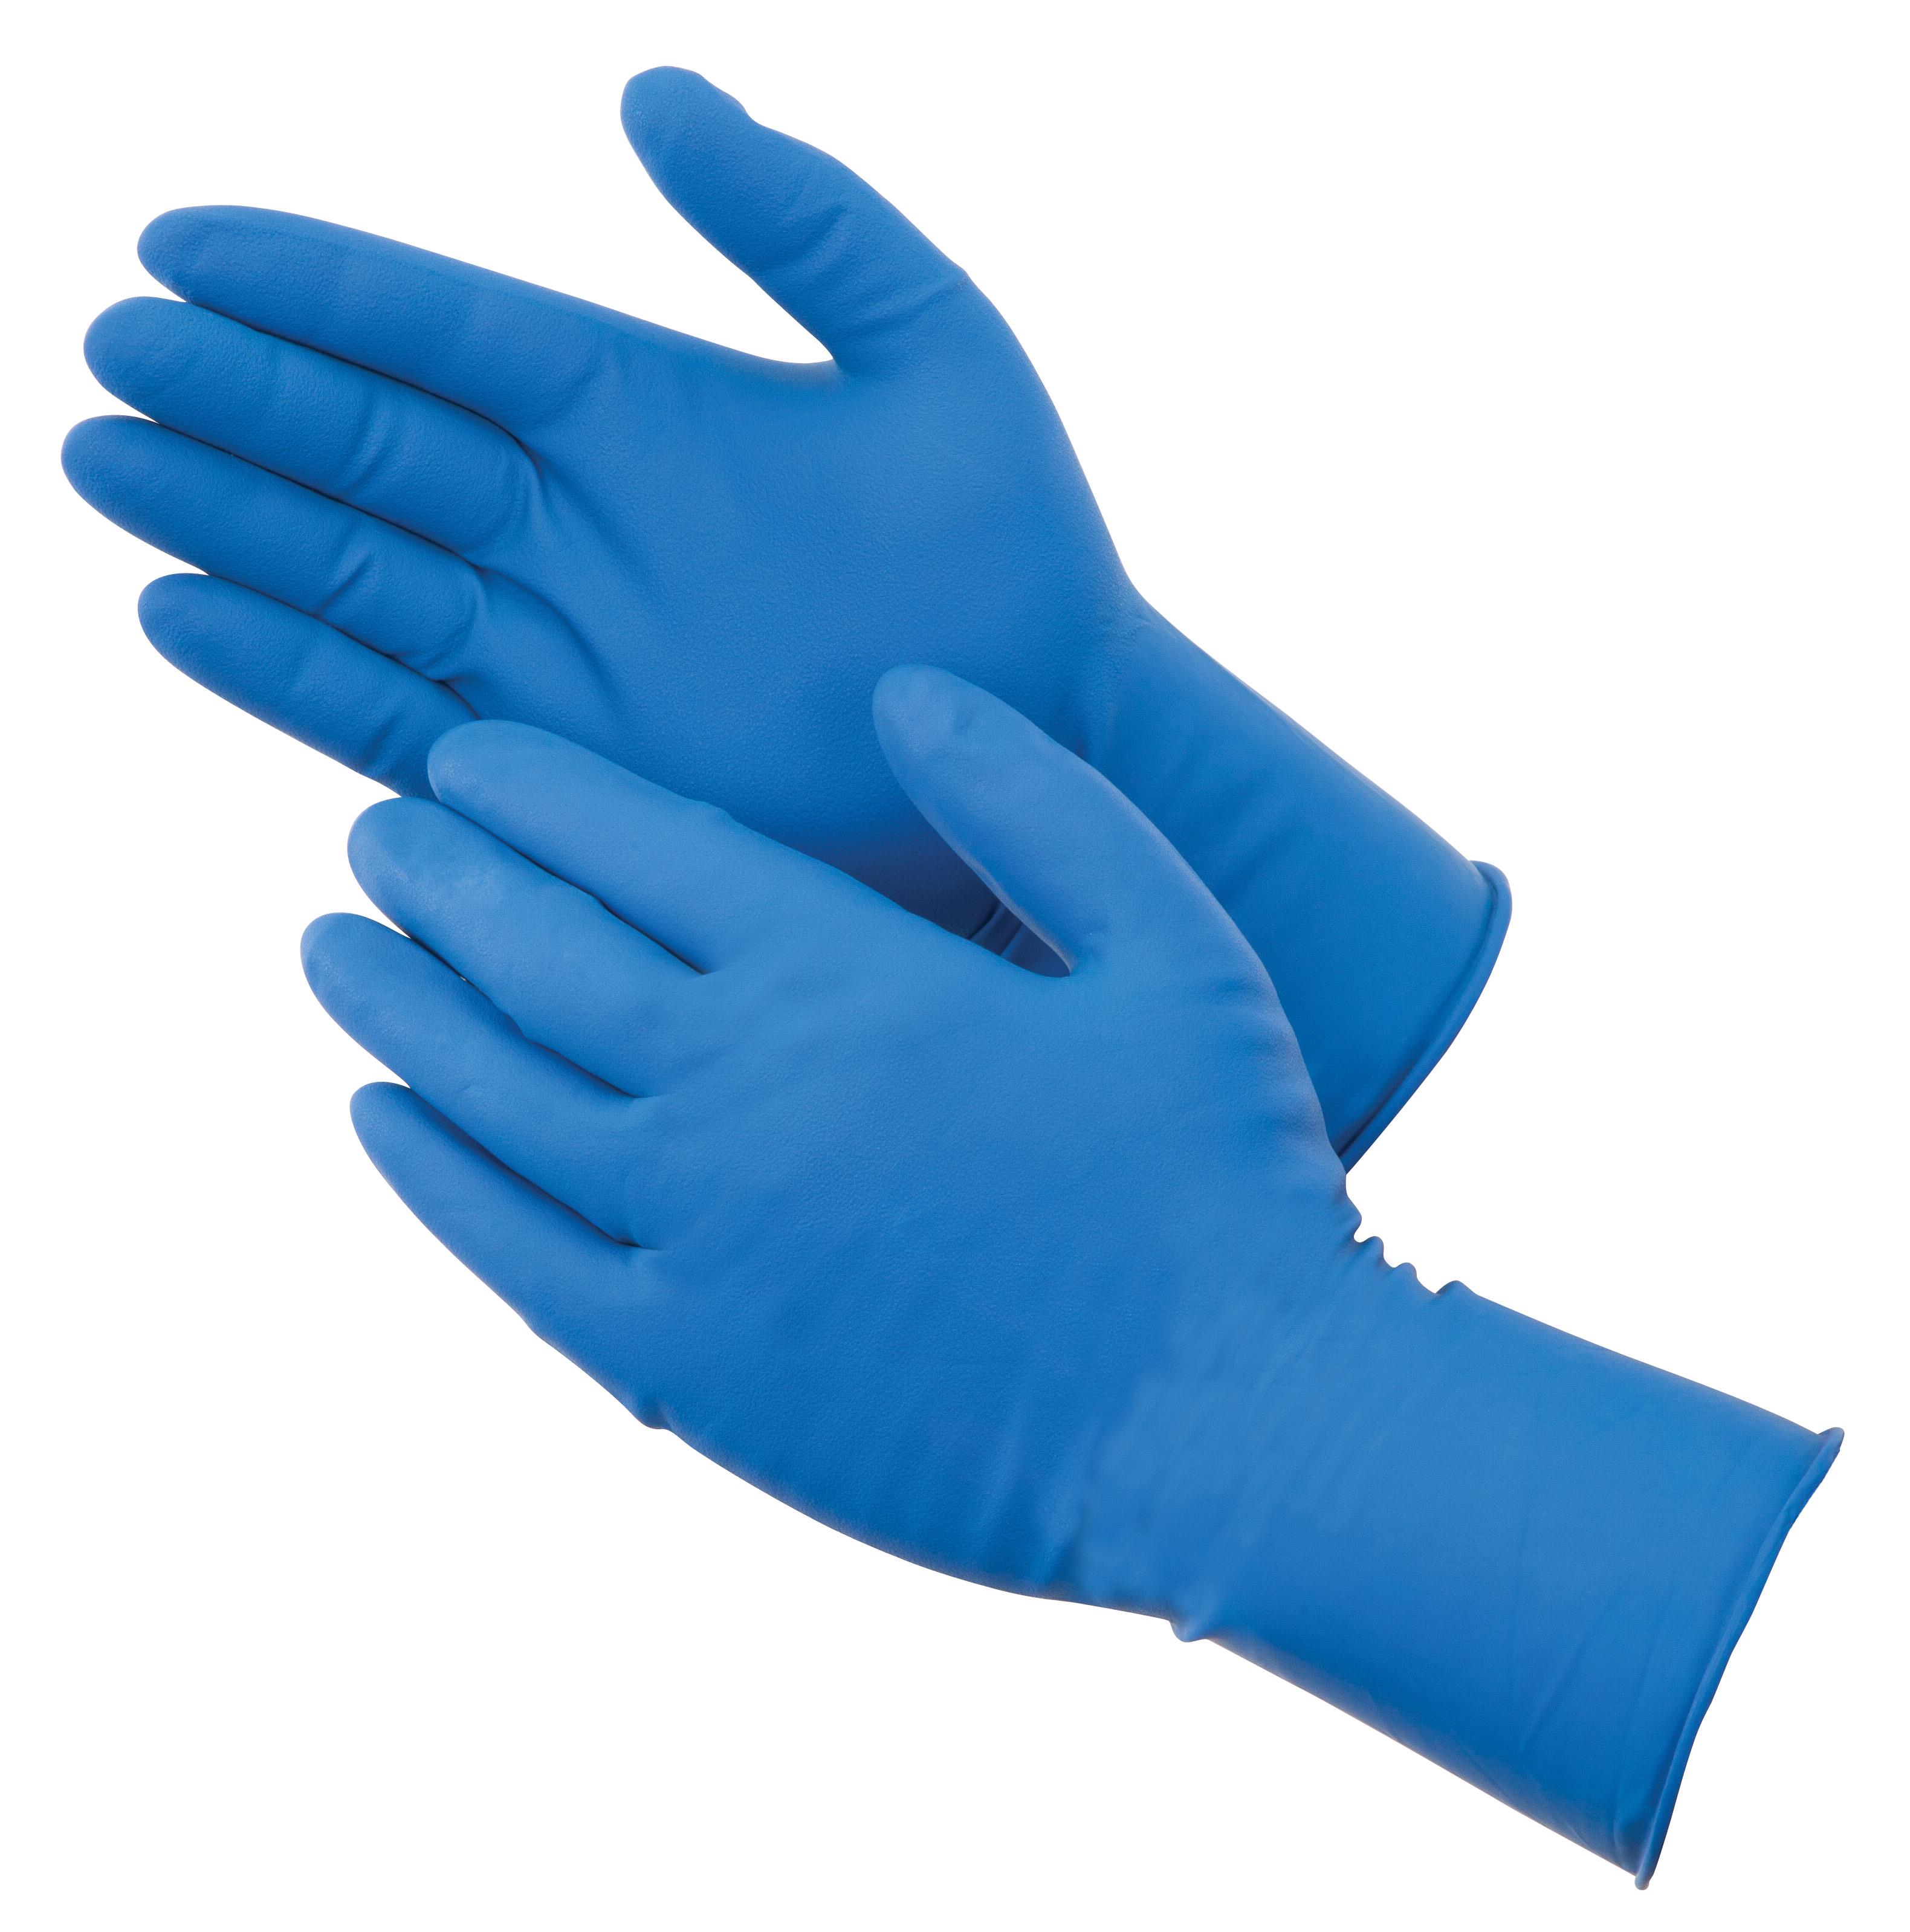 14 MIL POWDER FREE BLUE LATEX EXAM 50/BX - Tagged Gloves